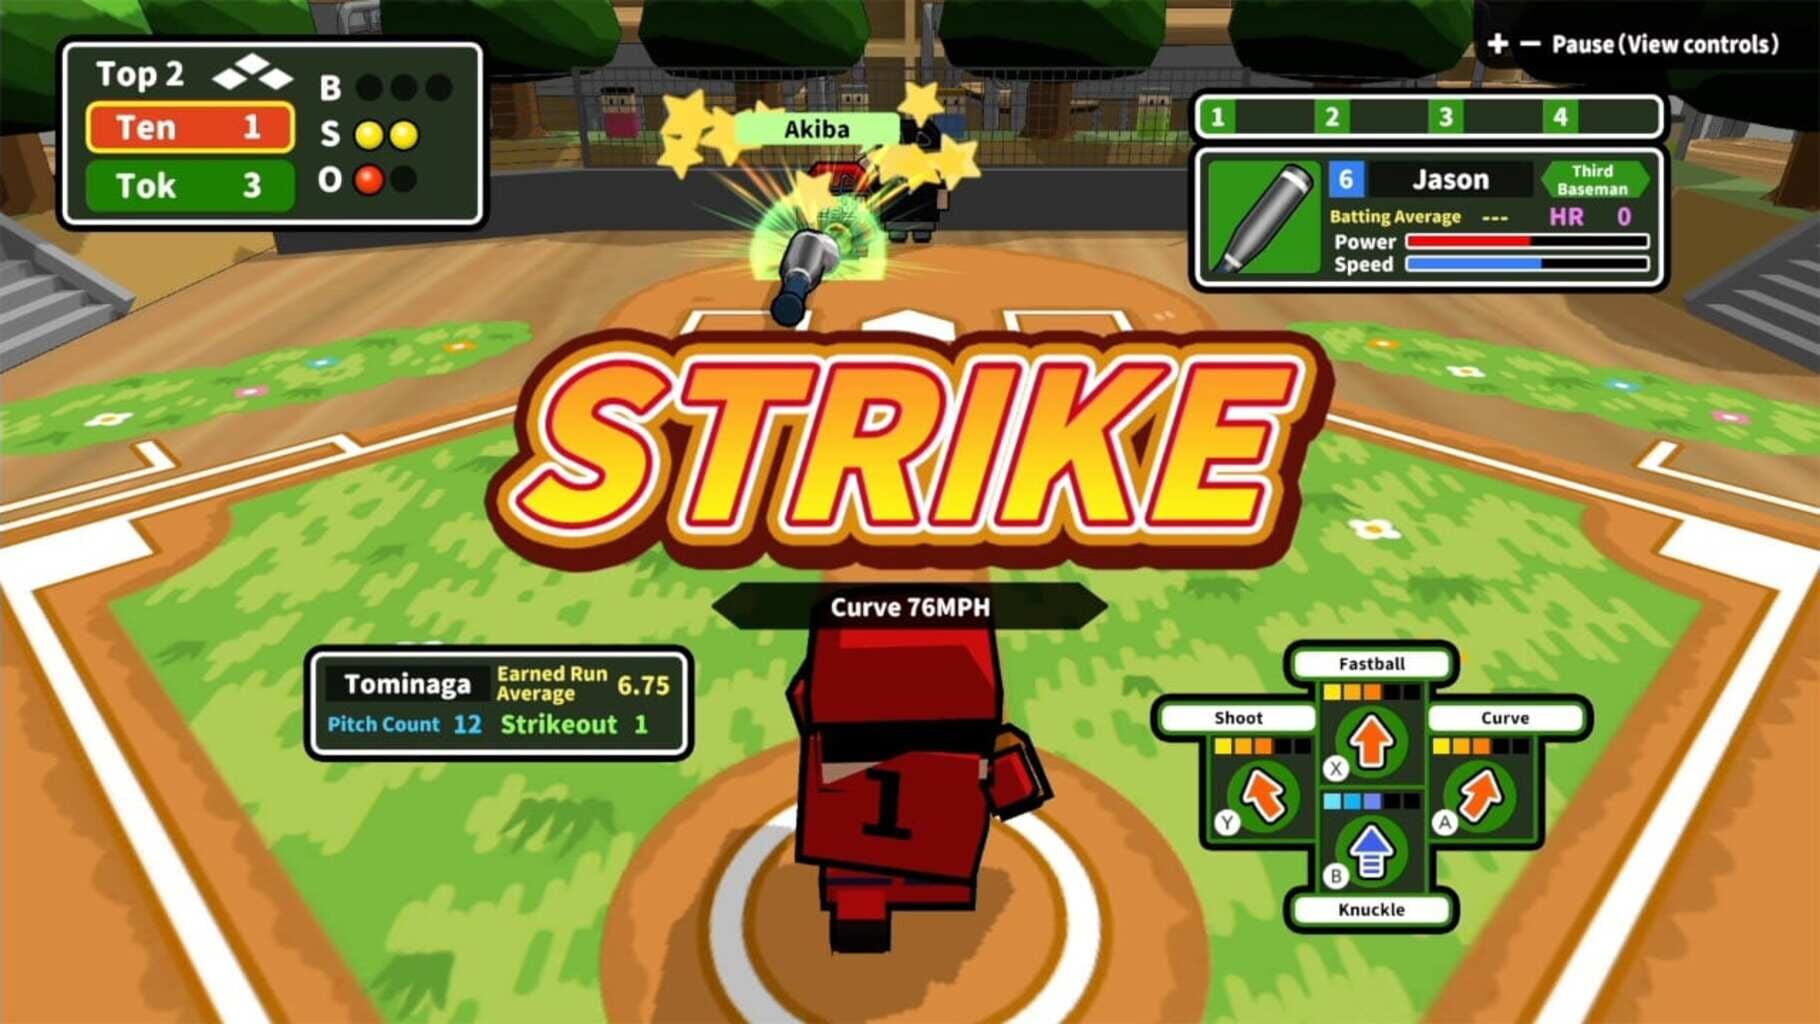 Desktop Baseball screenshot